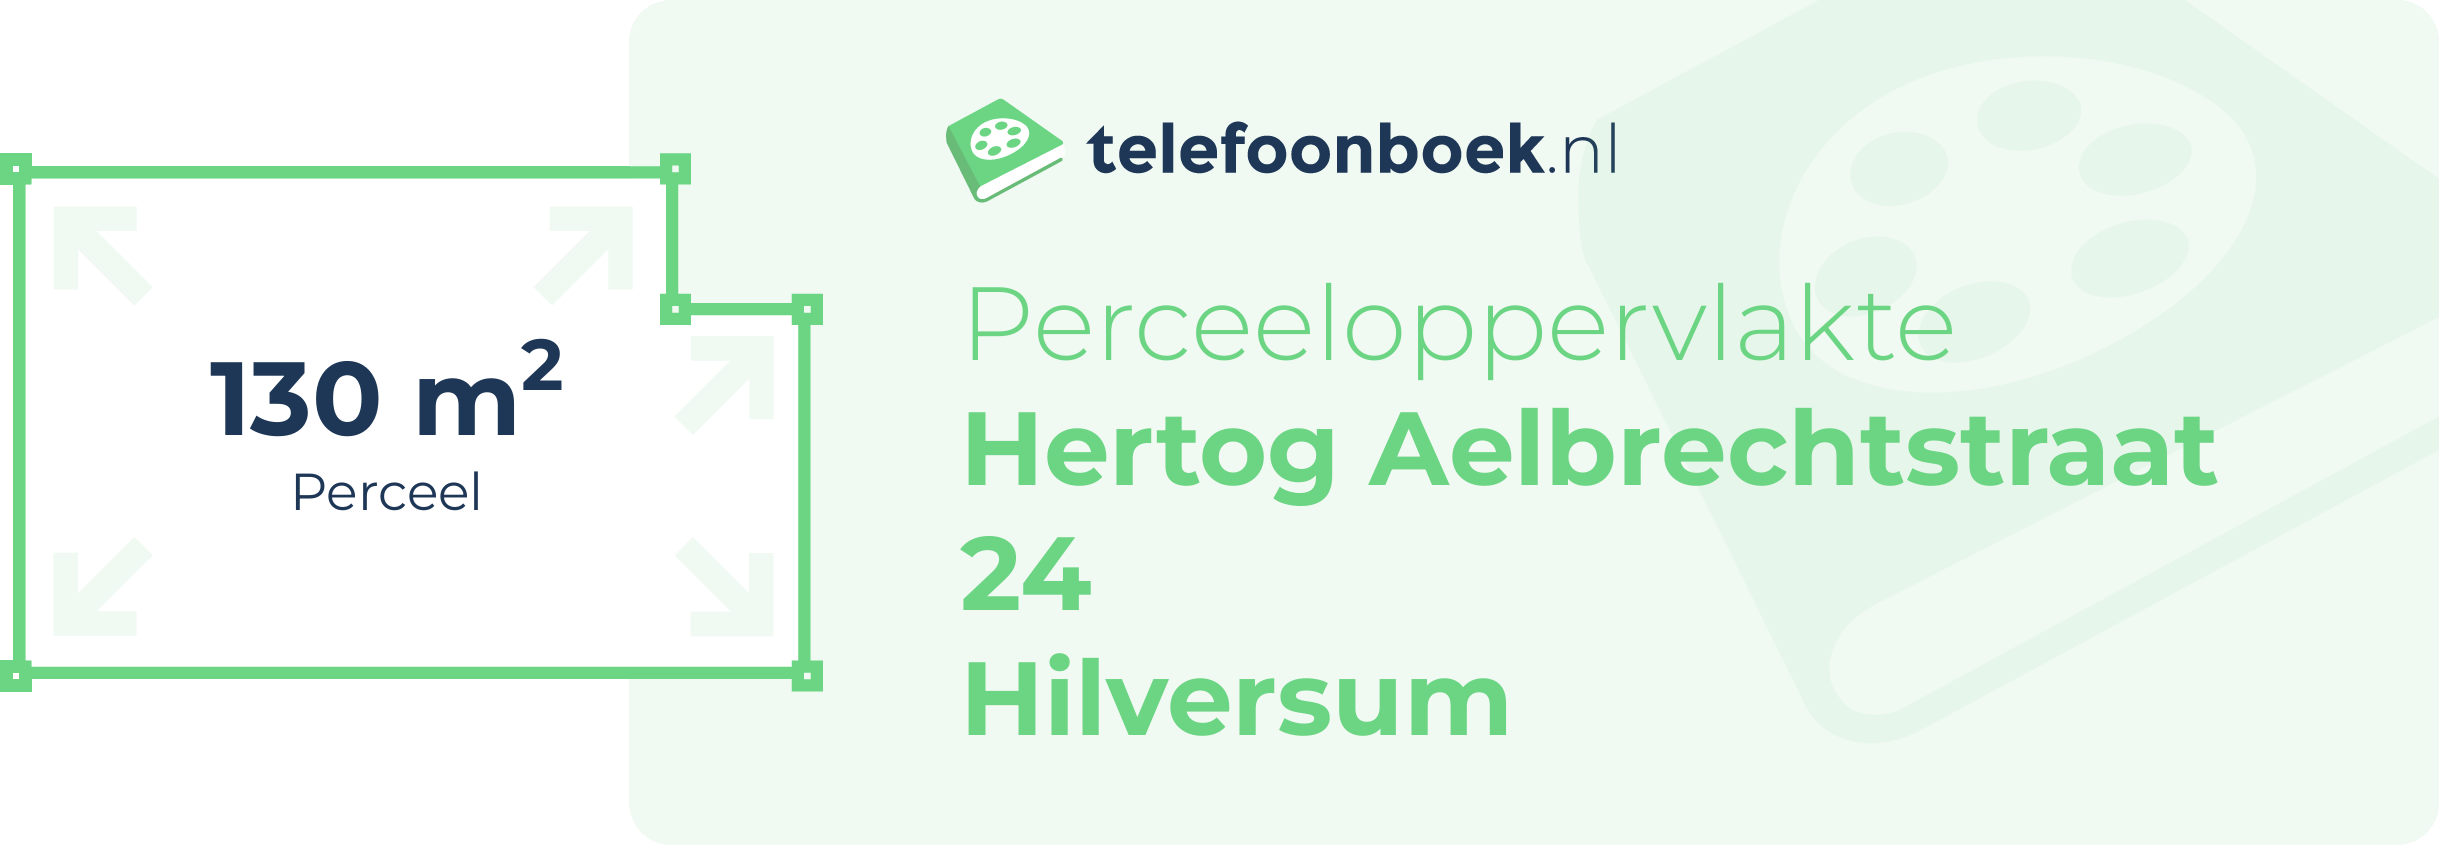 Perceeloppervlakte Hertog Aelbrechtstraat 24 Hilversum